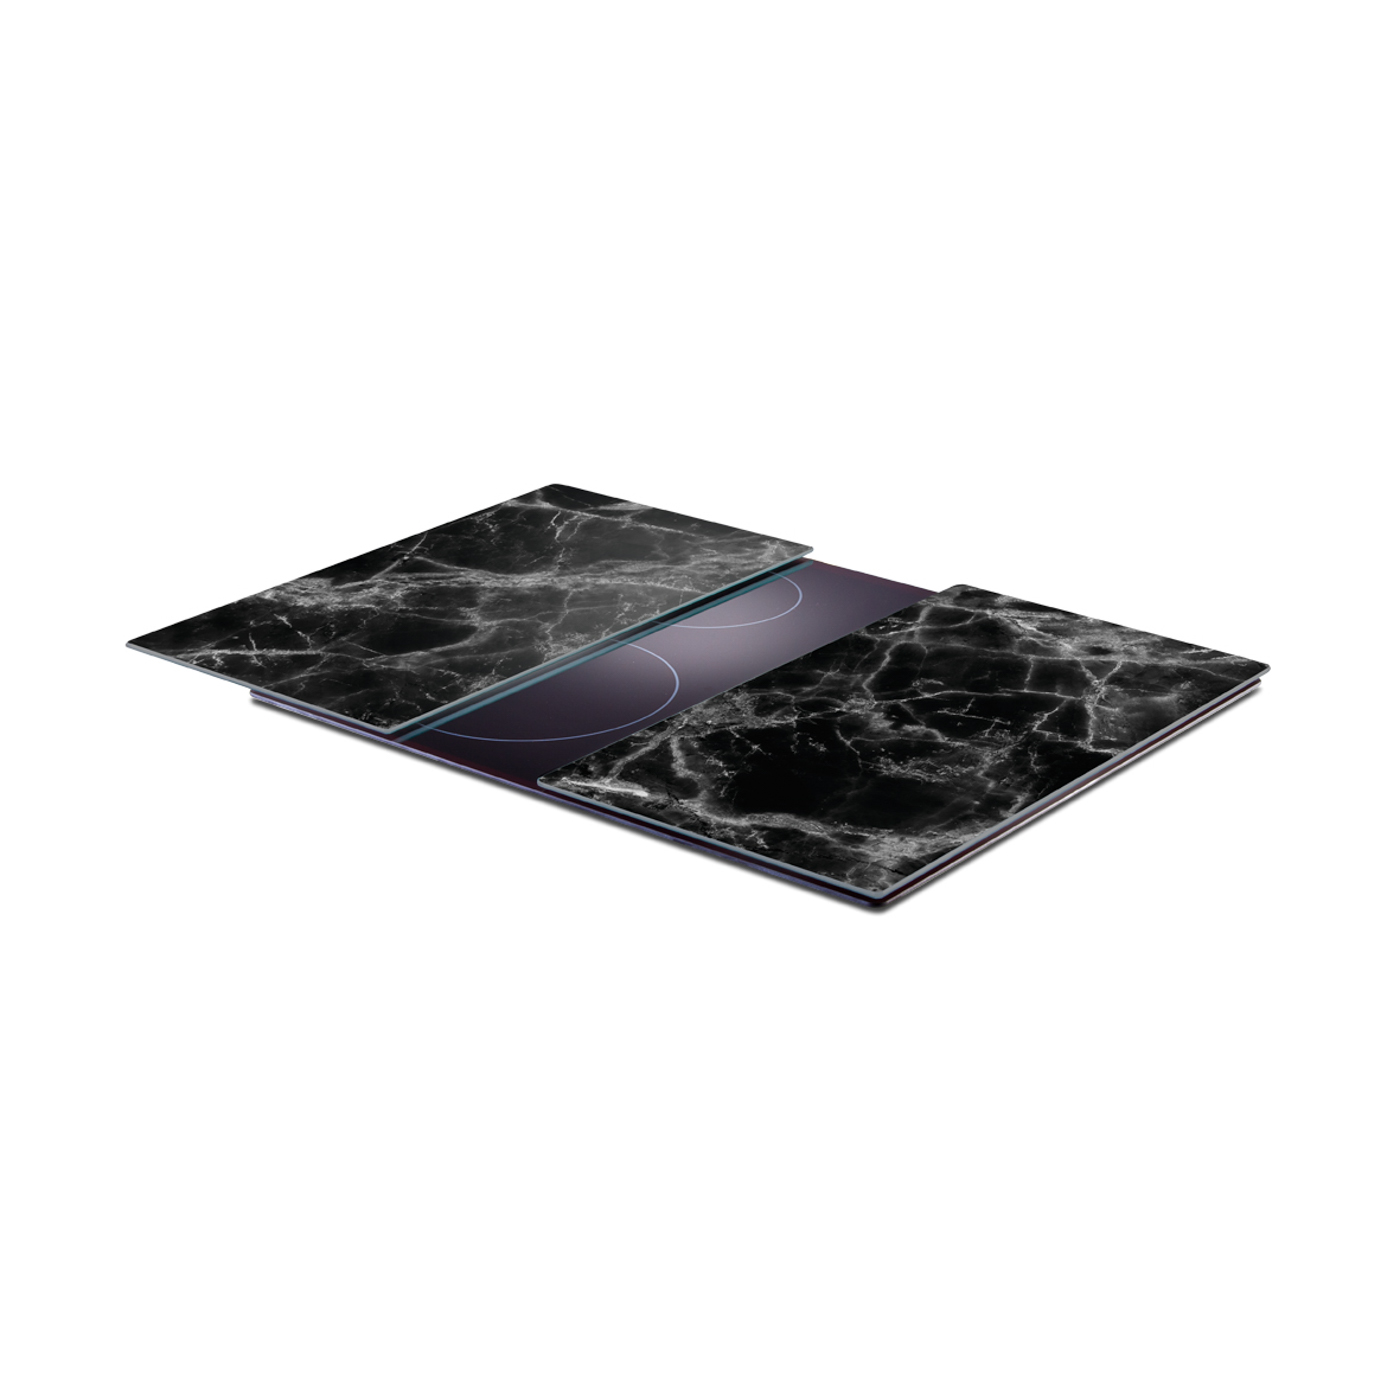 Herdabdeck-/Schneideplatten, Sicherheitsglas, 30x52 cm. Farbe: schwarz. Diese modernen Herdabdeck-/Schneideplatten aus Sicherheitsglas